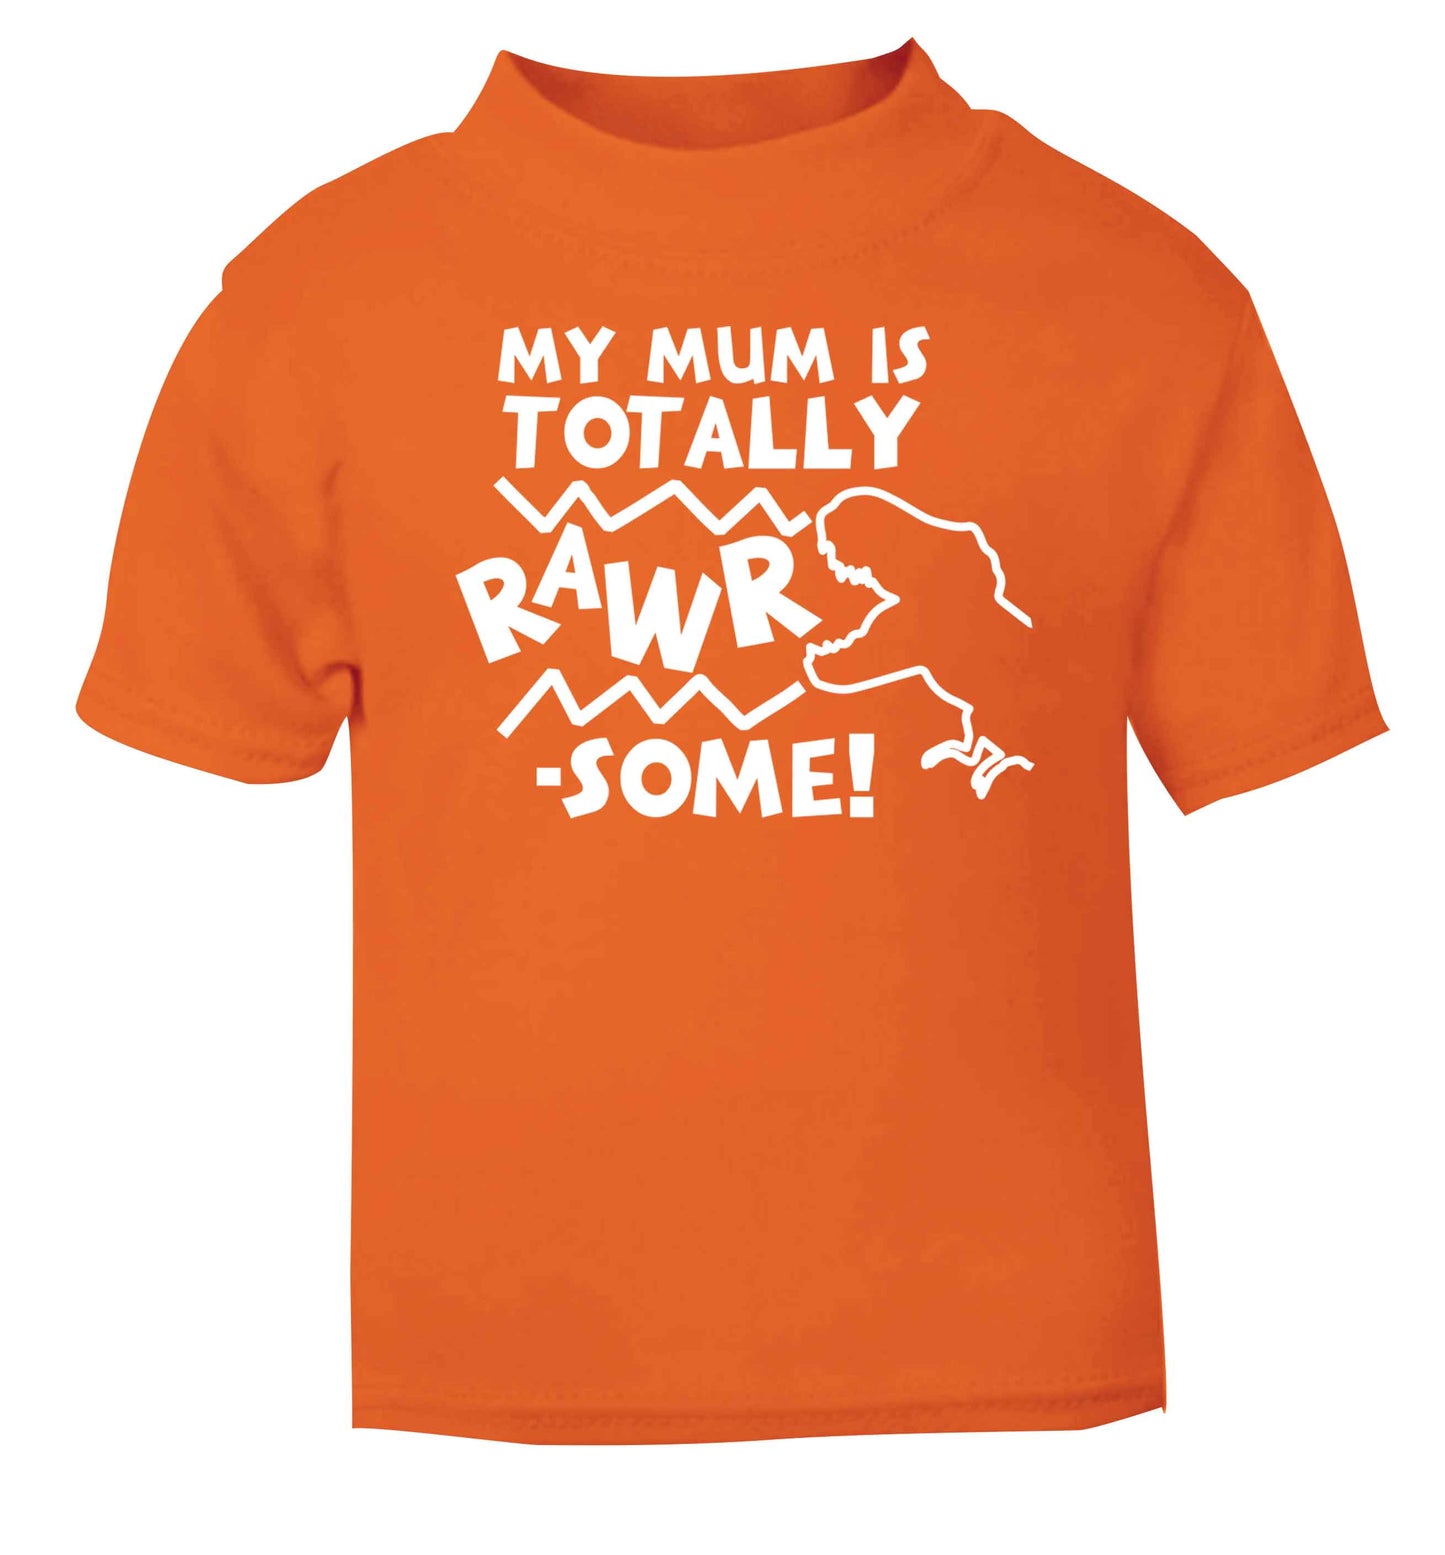 My mum is totally rawrsome orange baby toddler Tshirt 2 Years